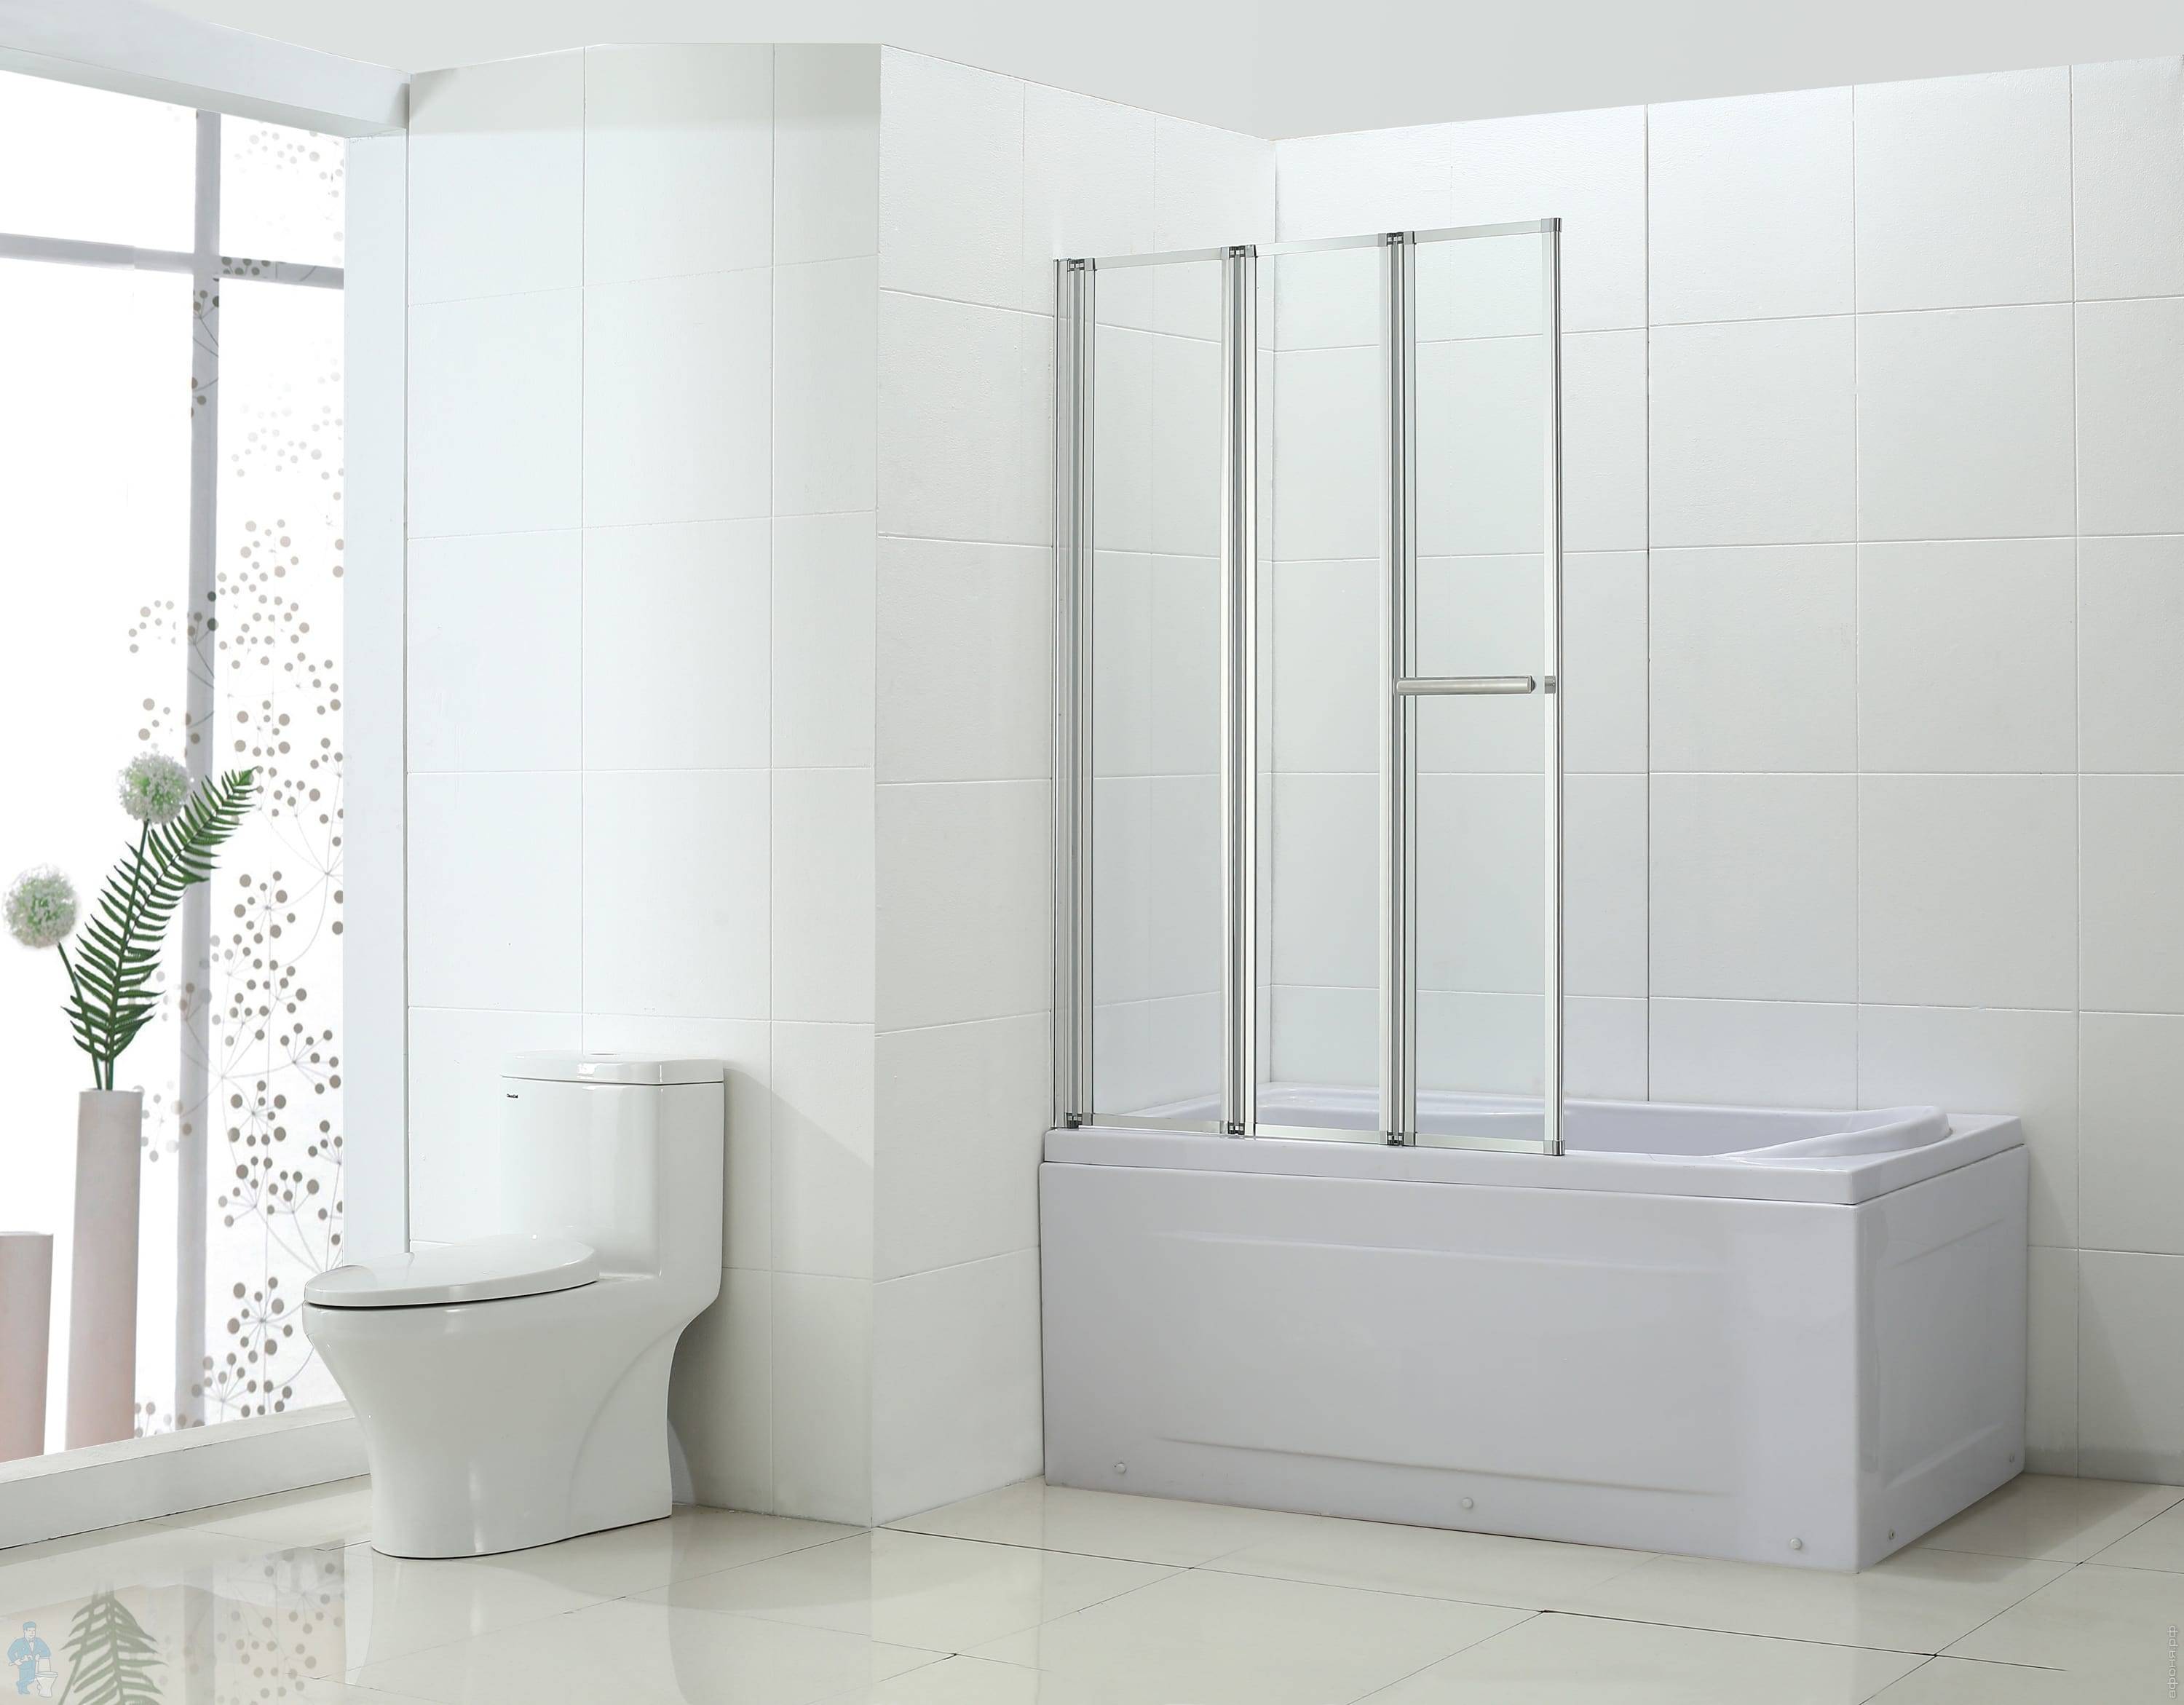 Особенности раздвижных конструкций устанавливаемых на ванну вместо шторки и применяемые на входе в помещение